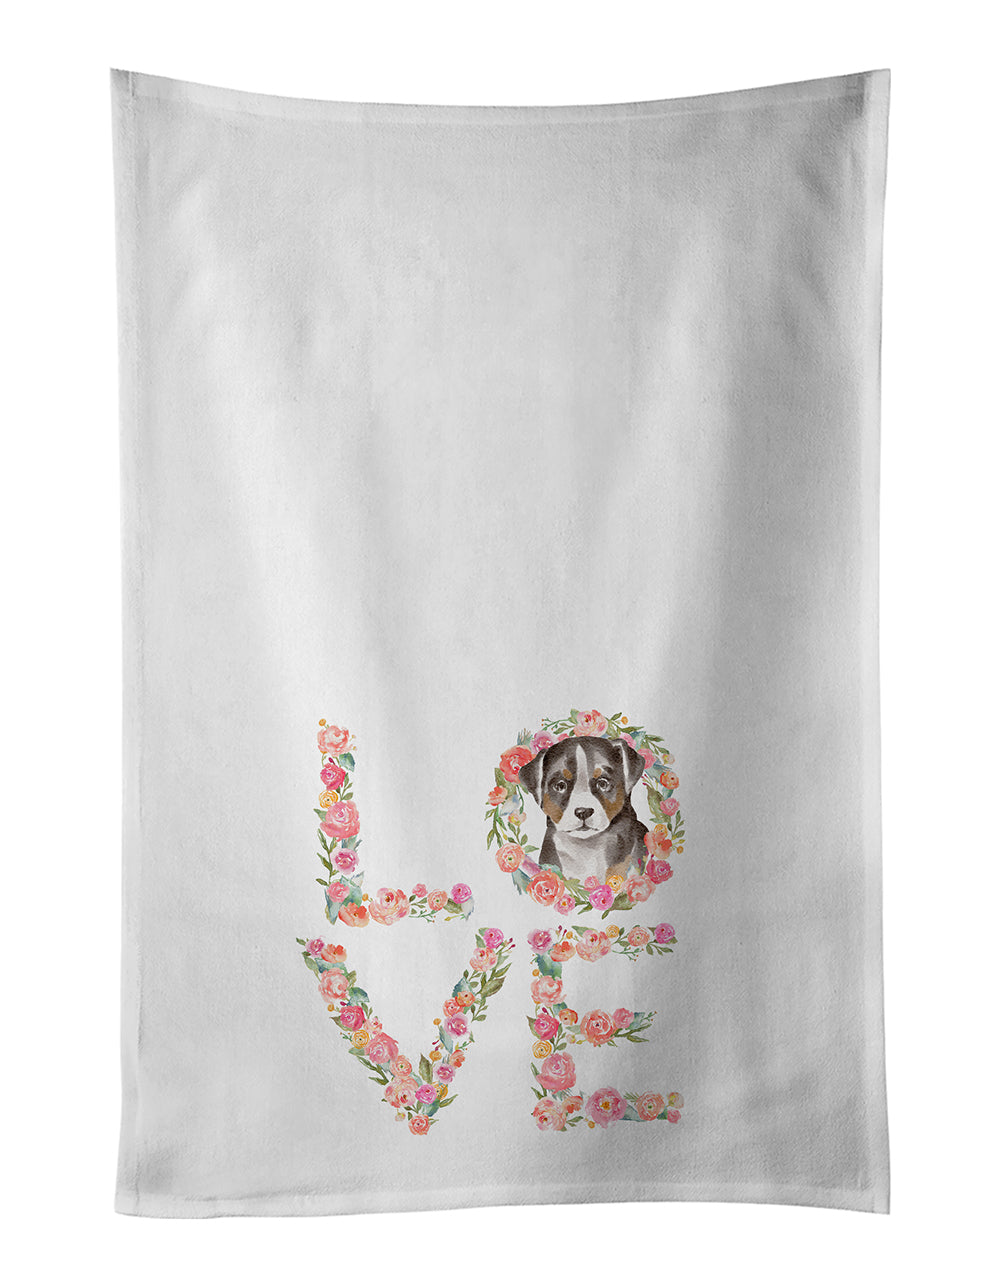 Buy this Appenzeller Sennenhund Puppy Love White Kitchen Towel Set of 2 Dish Towels